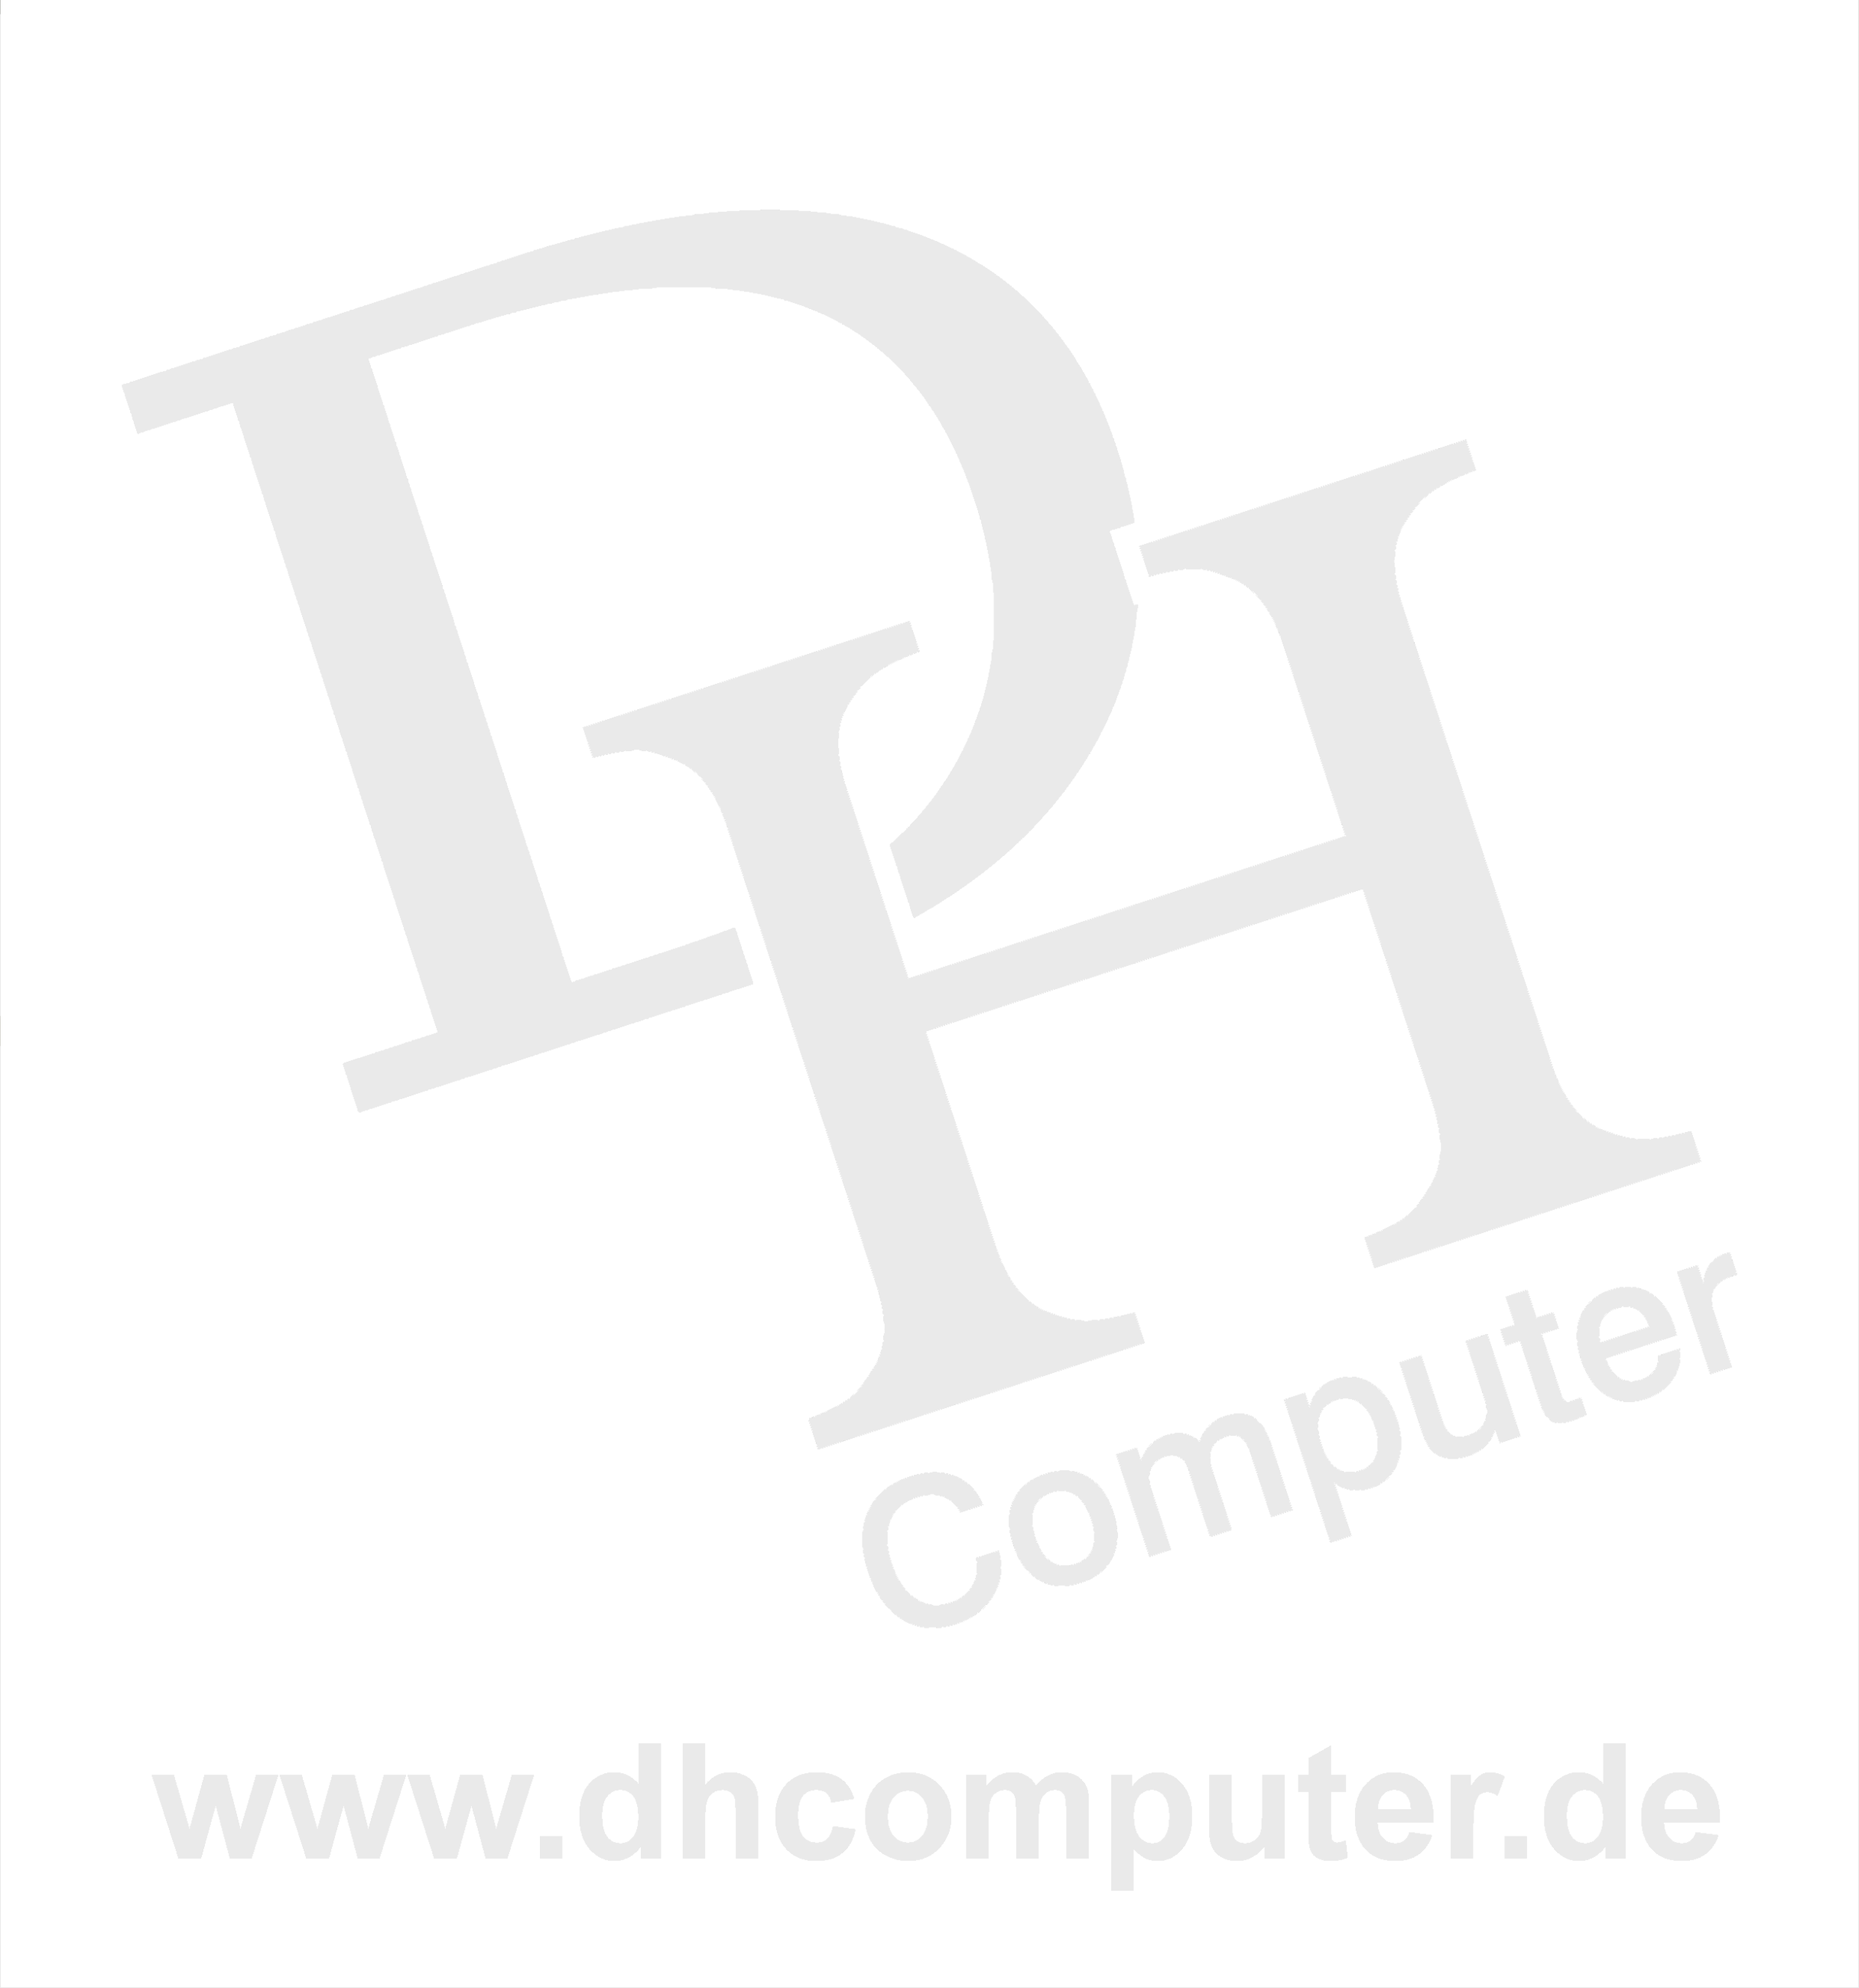 (c) Dhcomputer.de